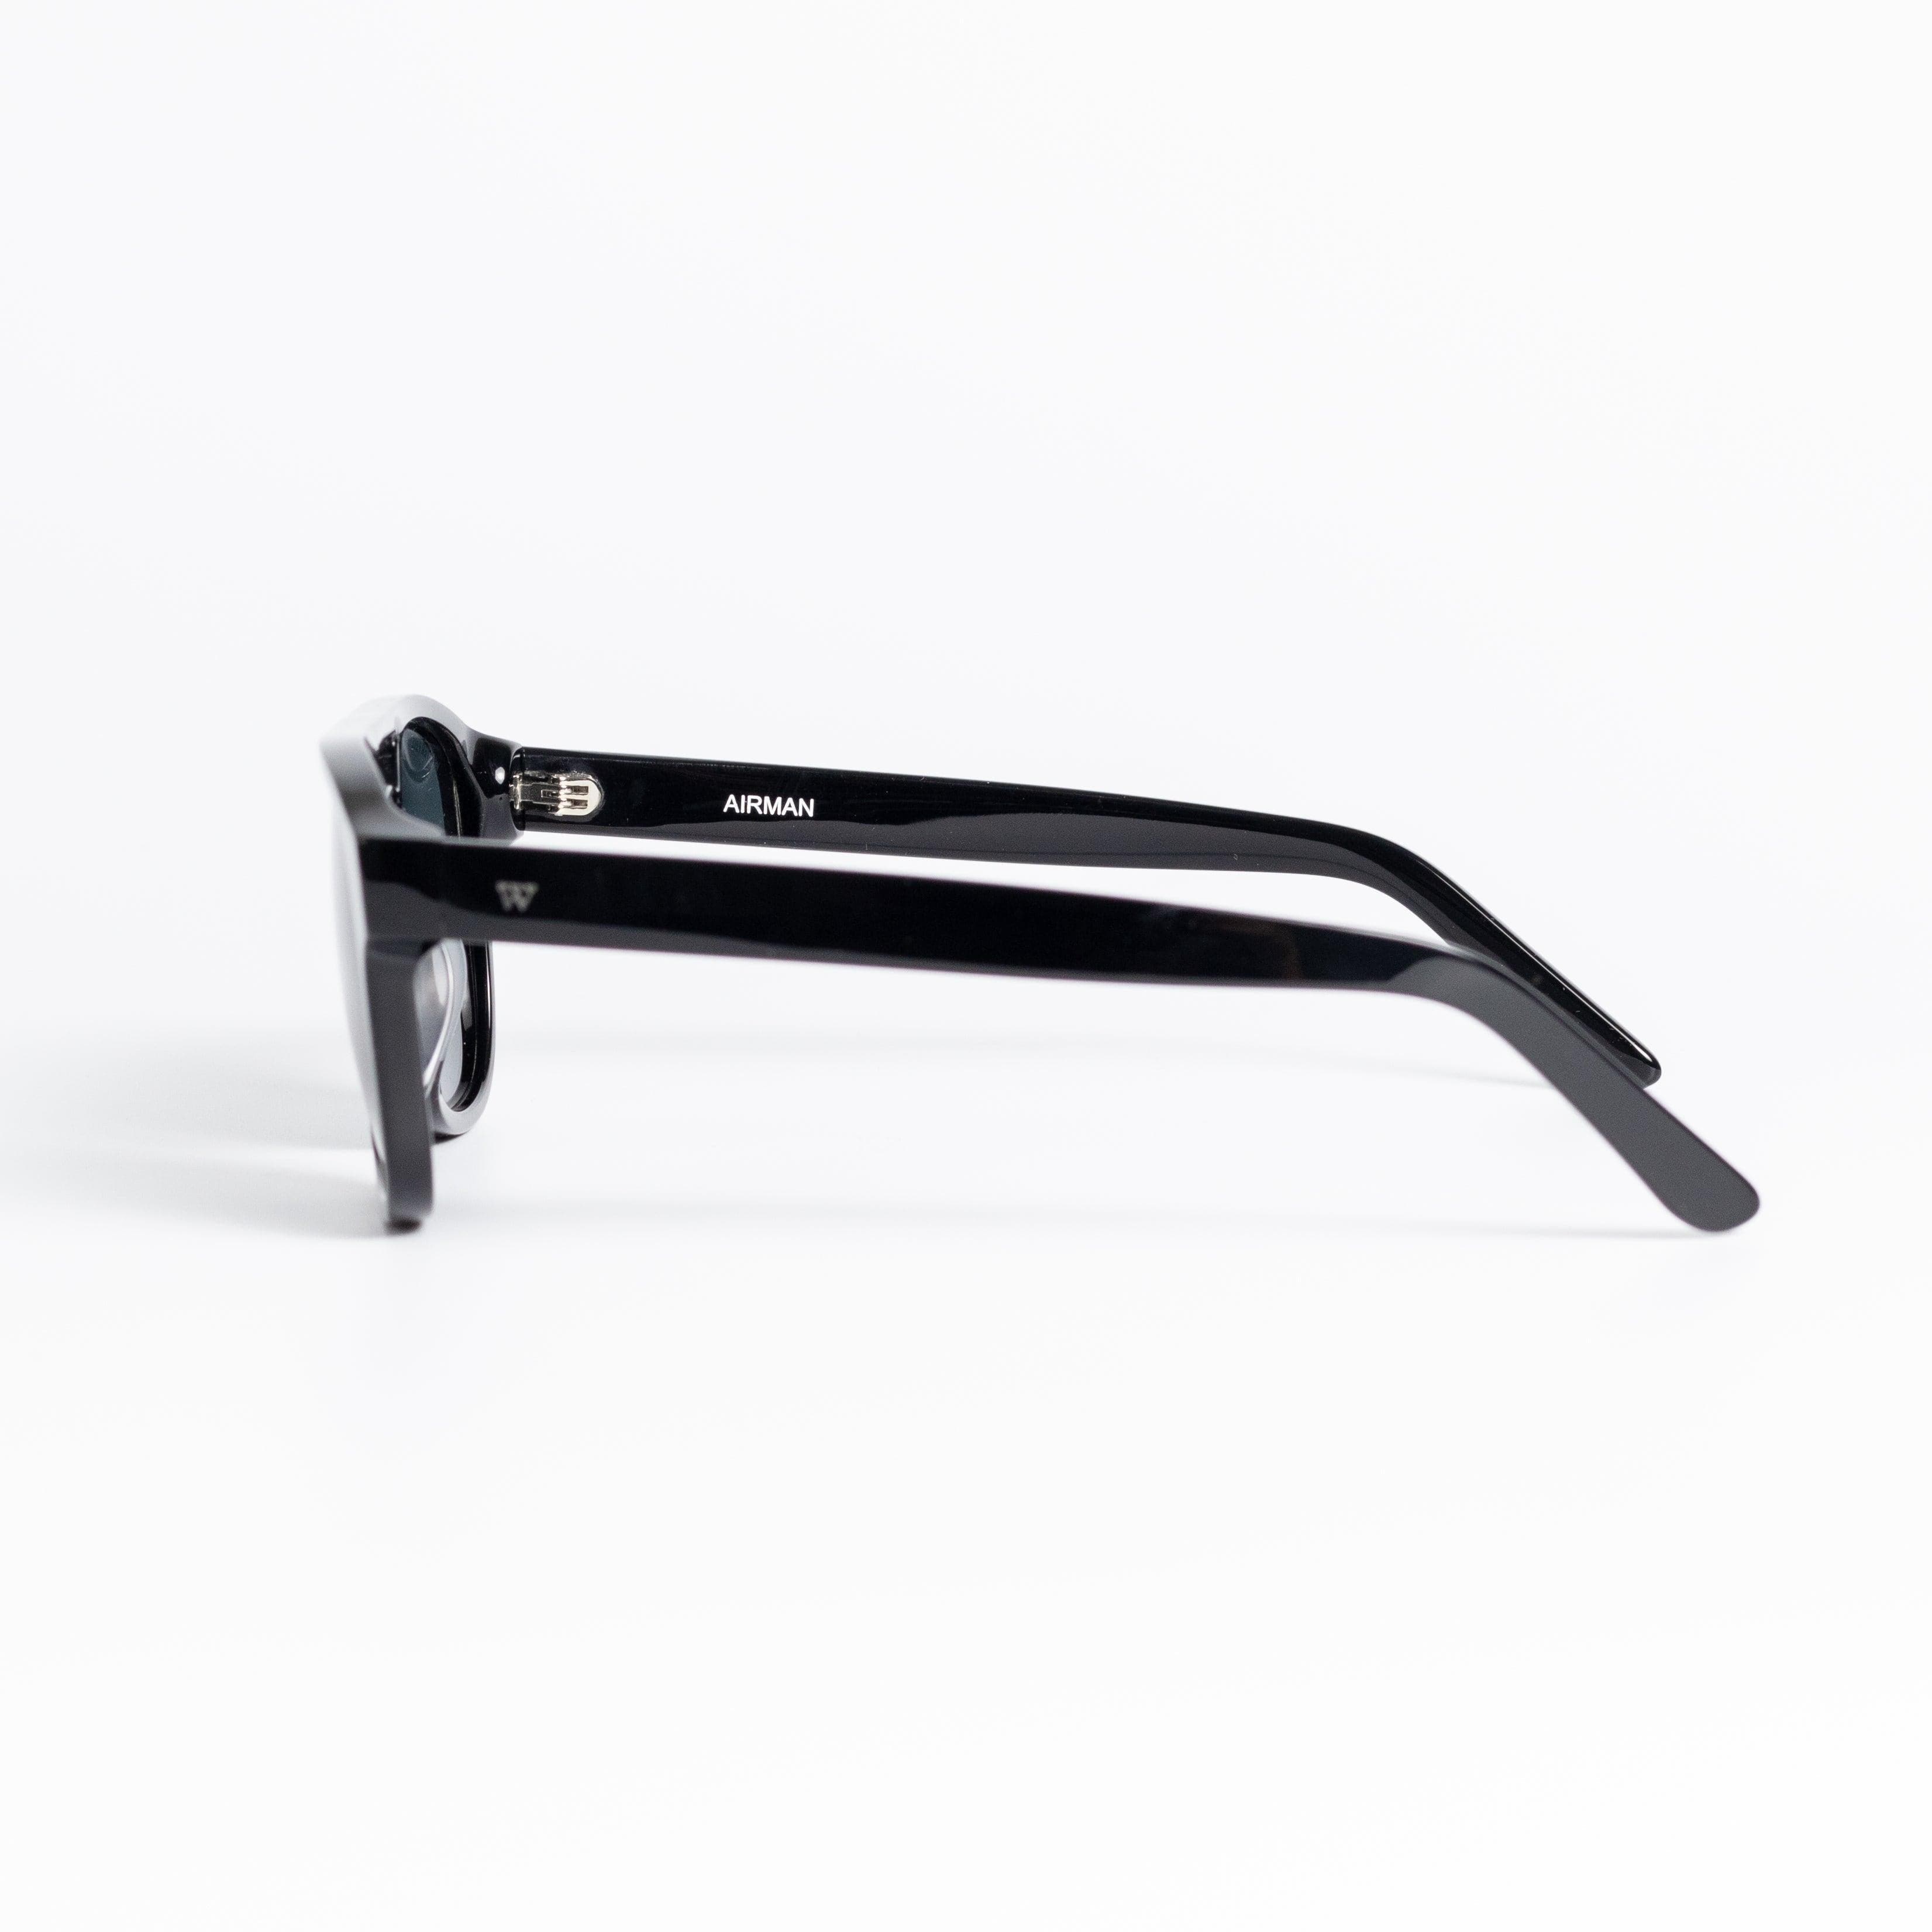 Walter Hill Sunglasses Standard AIRMAN - Black